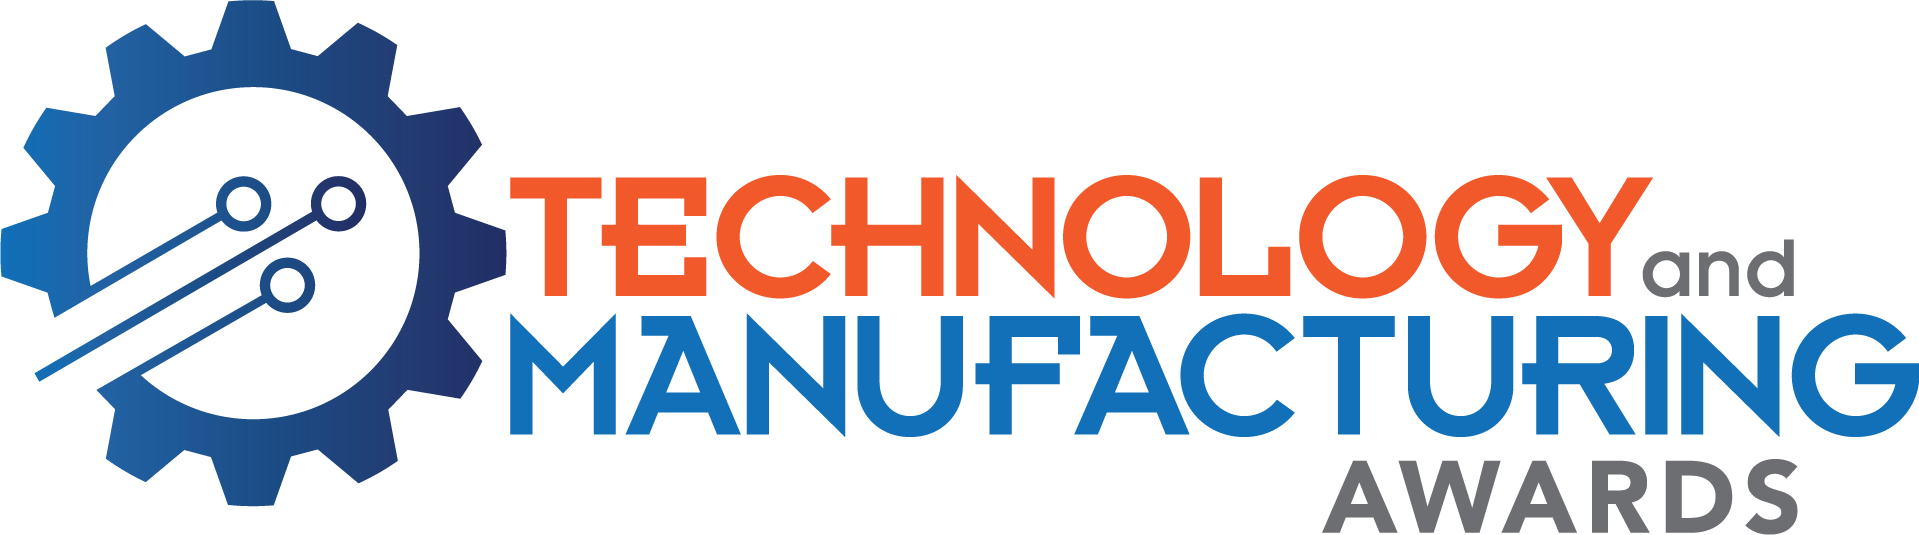 Tech_man_logo-2